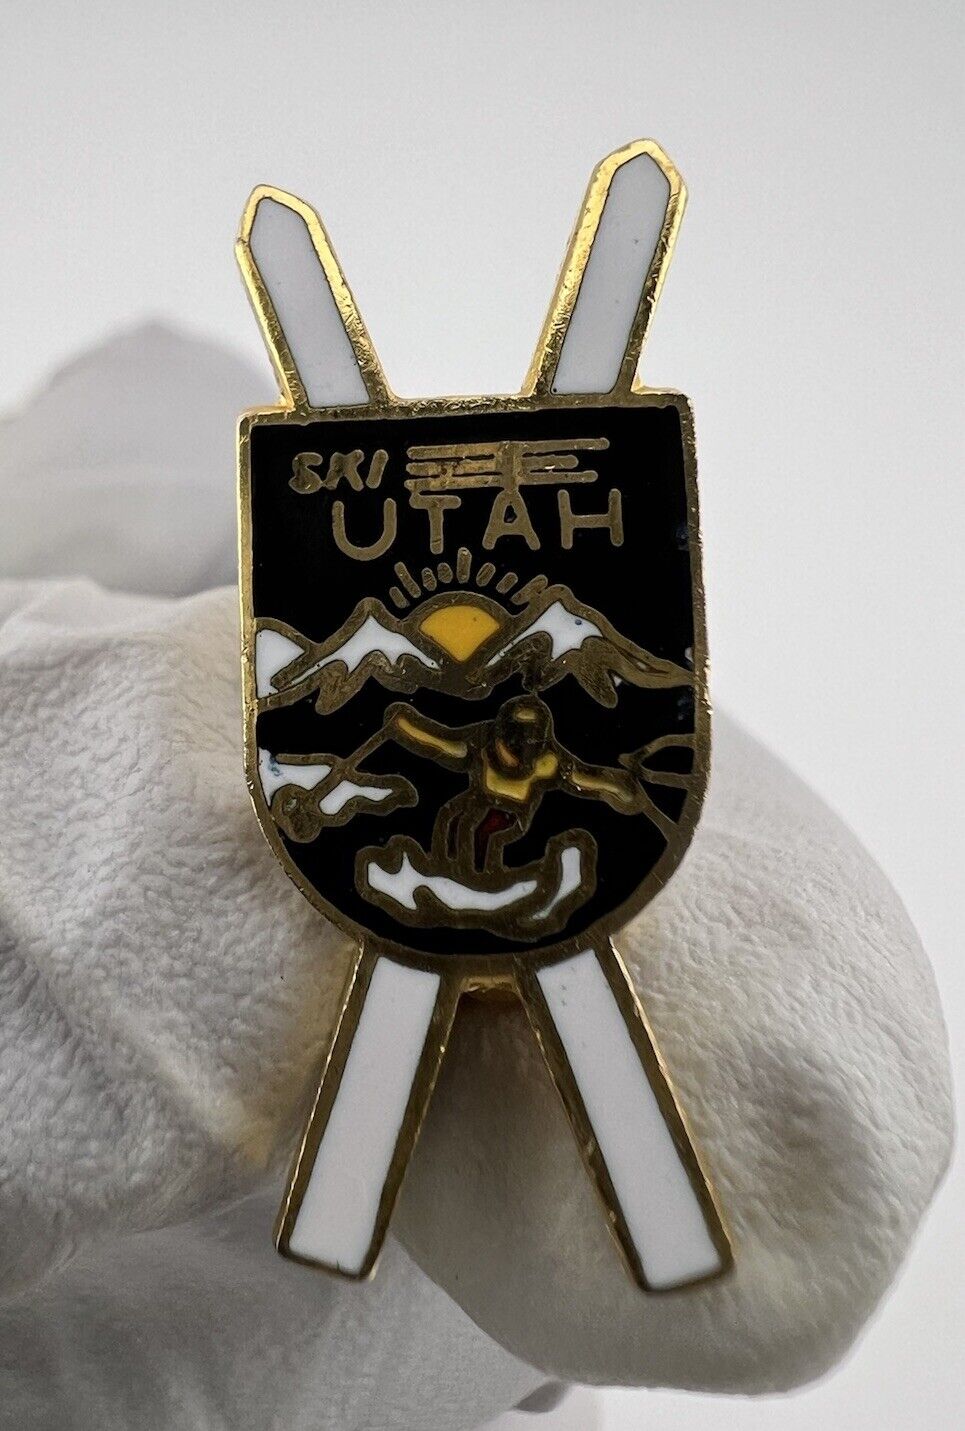 Ski Utah Vintage Gold Tone Enamel Skiing Resort Pin